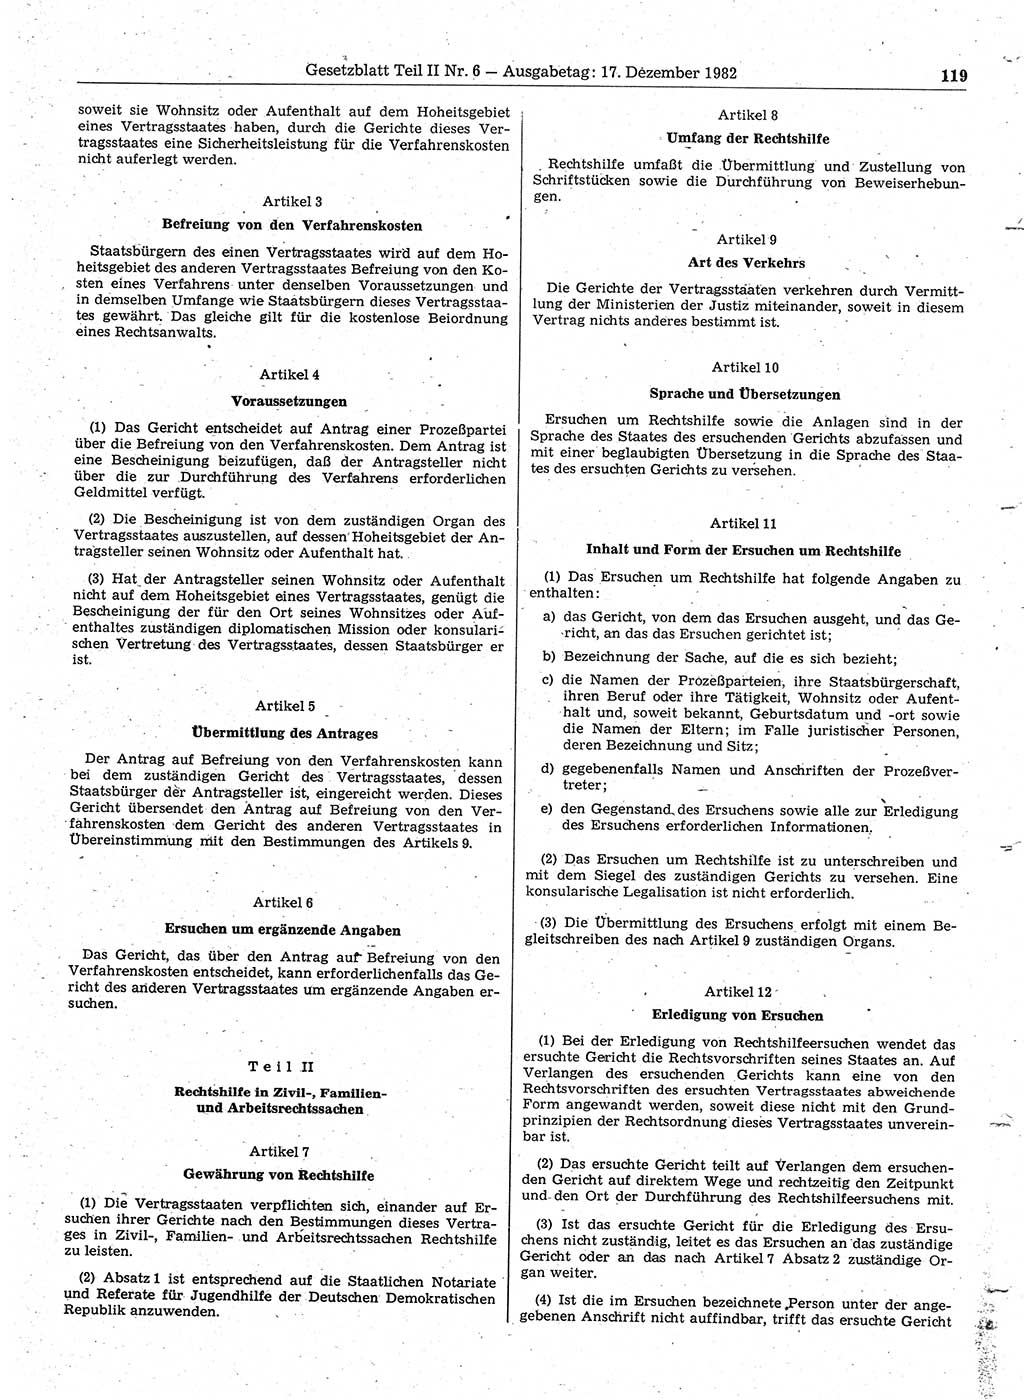 Gesetzblatt (GBl.) der Deutschen Demokratischen Republik (DDR) Teil ⅠⅠ 1982, Seite 119 (GBl. DDR ⅠⅠ 1982, S. 119)